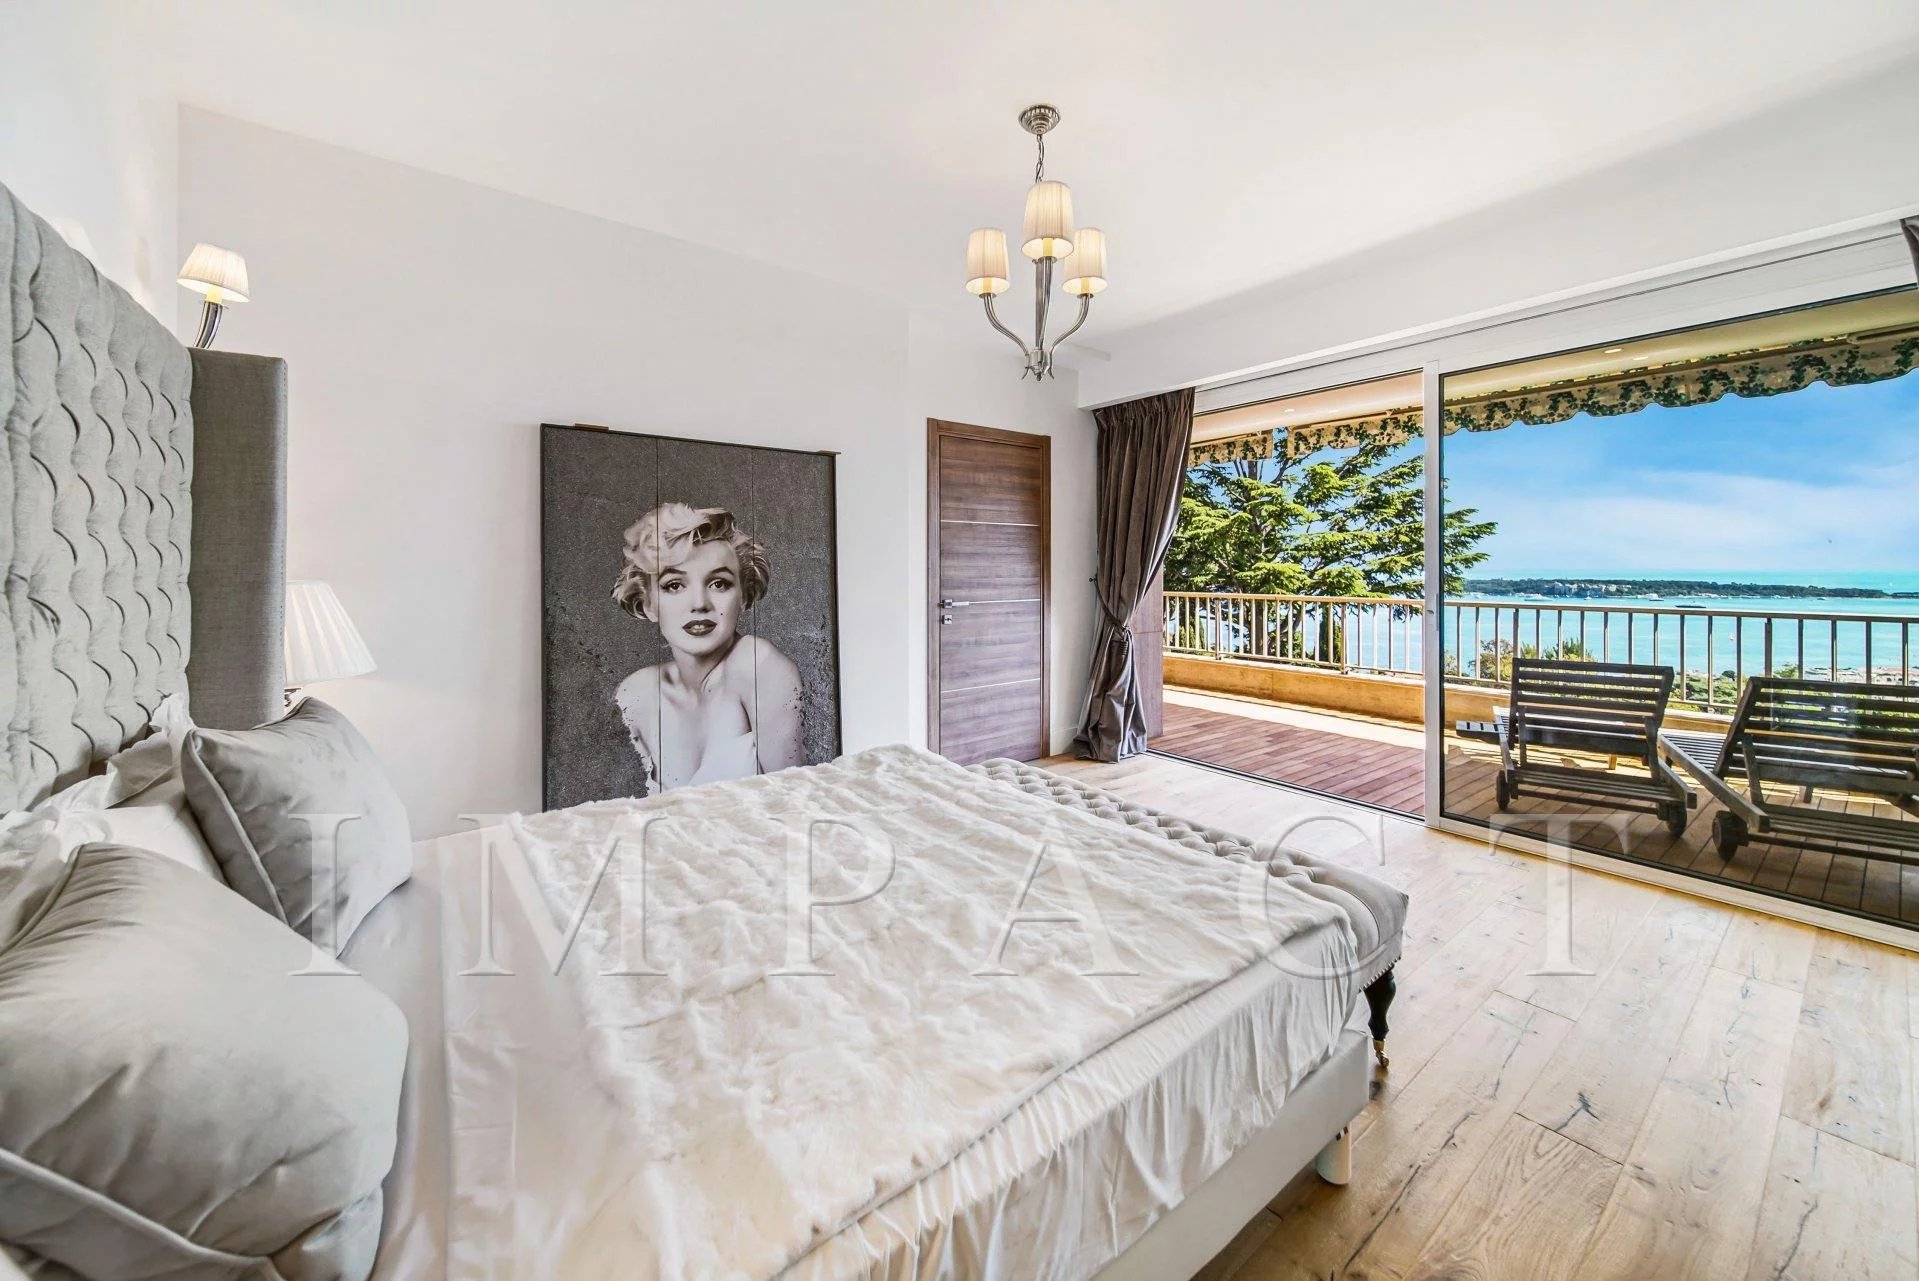 Magnifique appartement à louer, entièrement rénové, sur la Californie, Cannes.